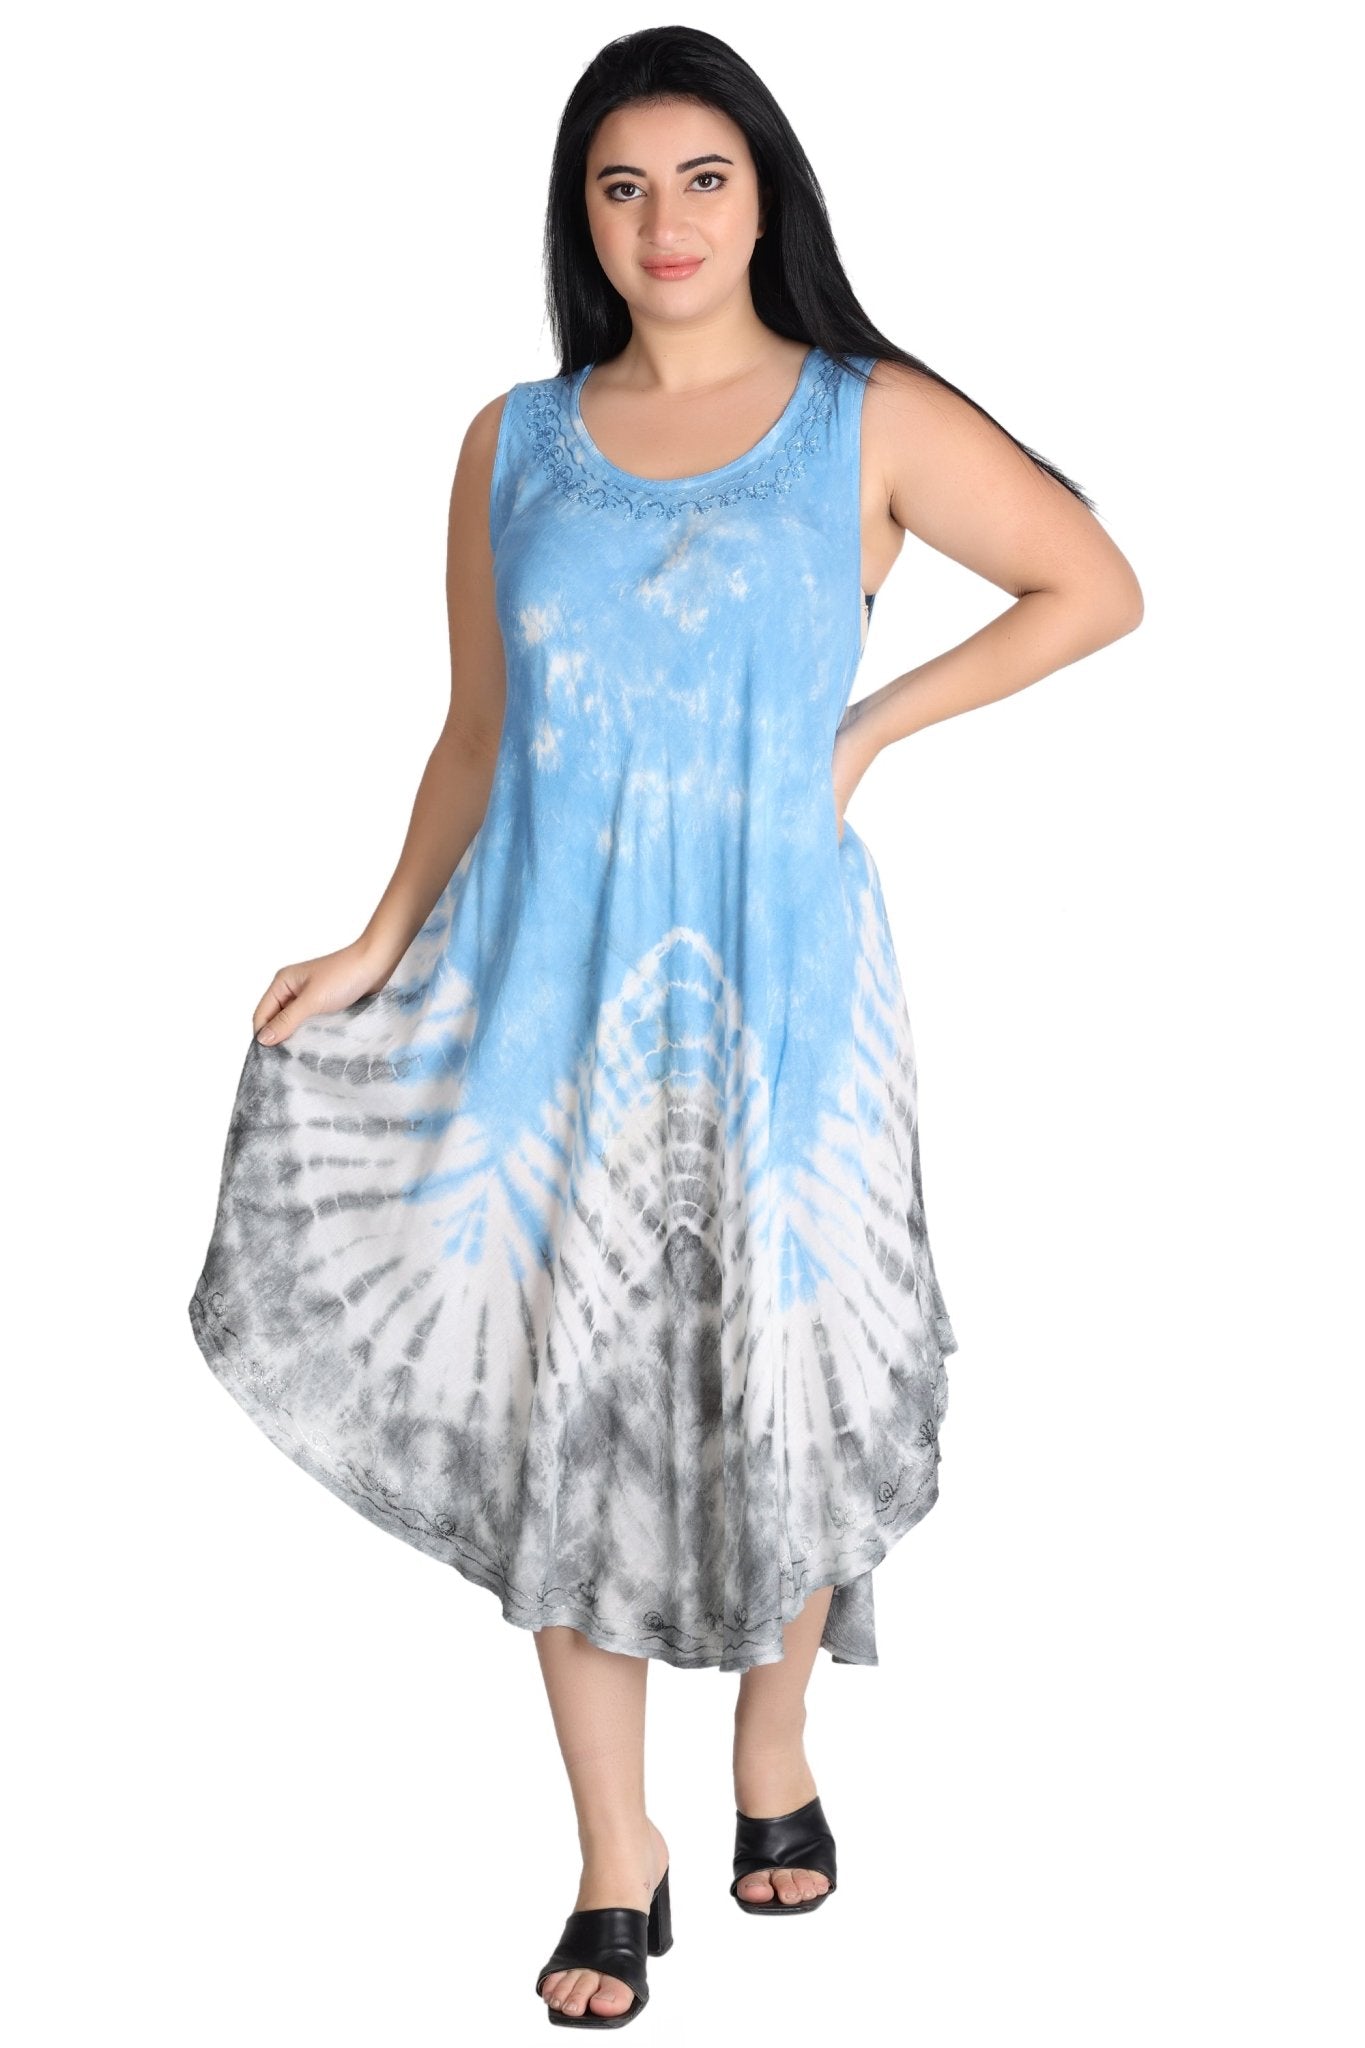 Pastel Tie Dye Dress 482155R - Advance Apparels Inc